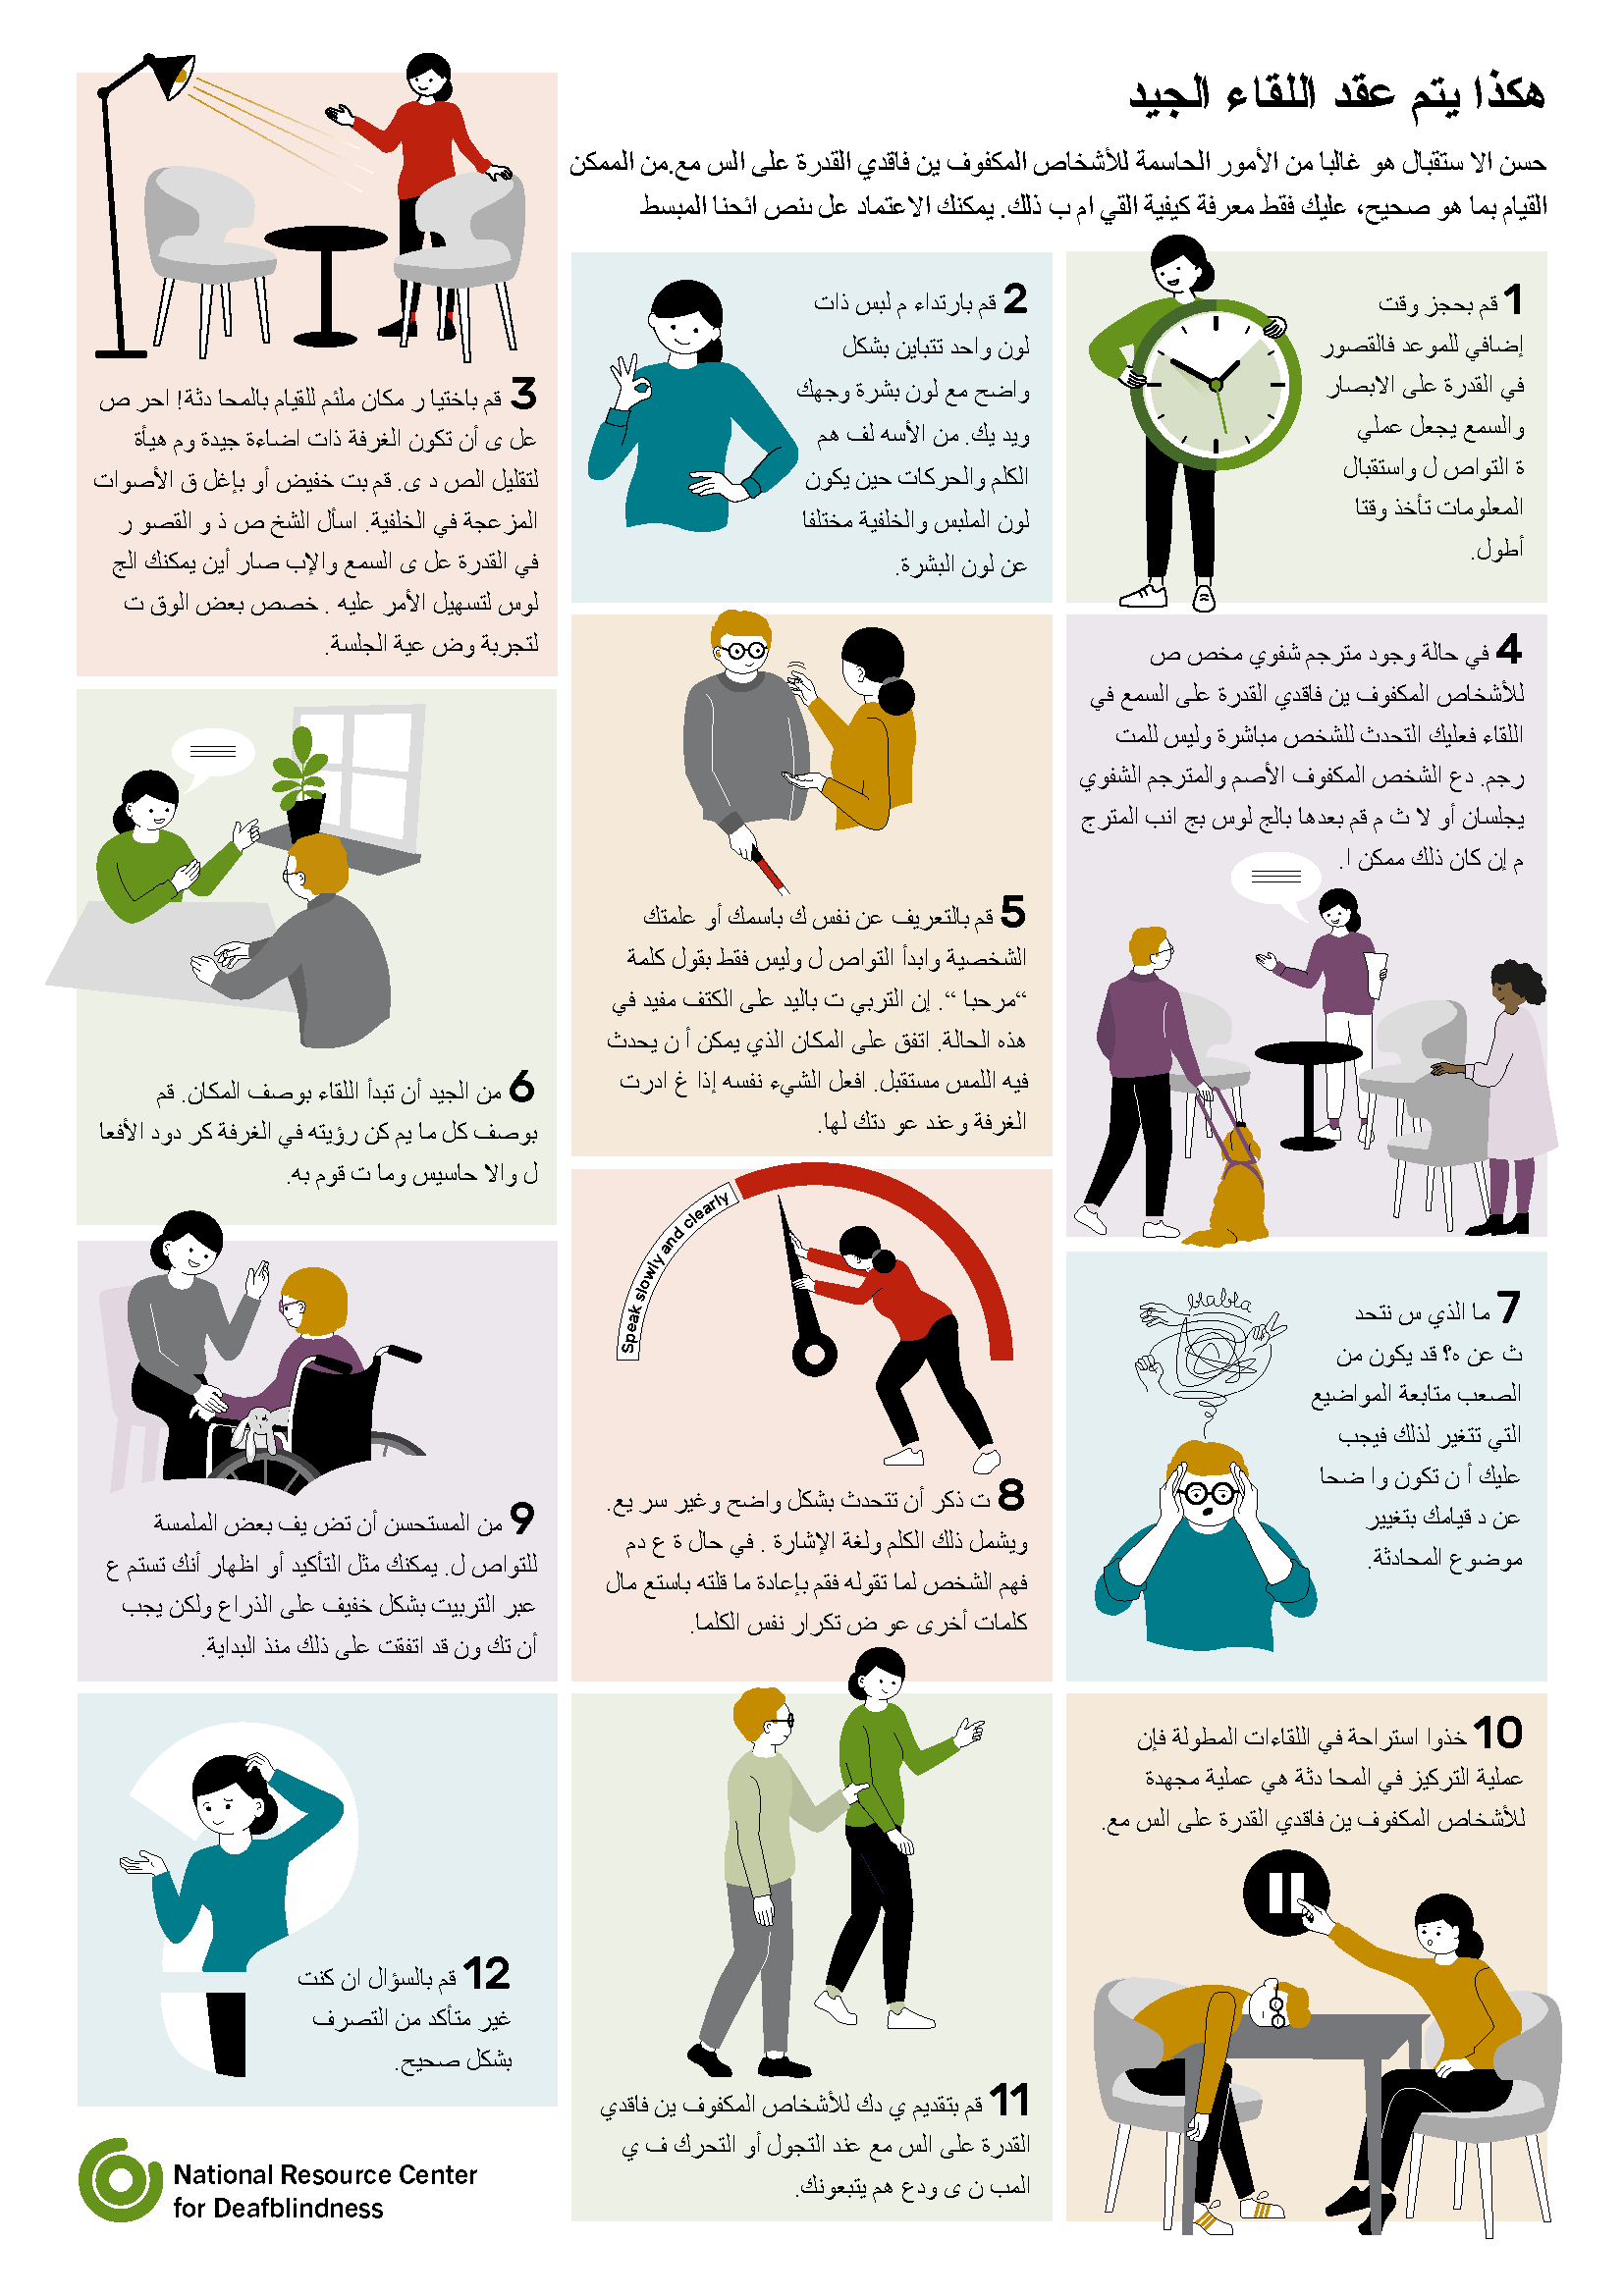 text- och bildserie på arabiska, illustration